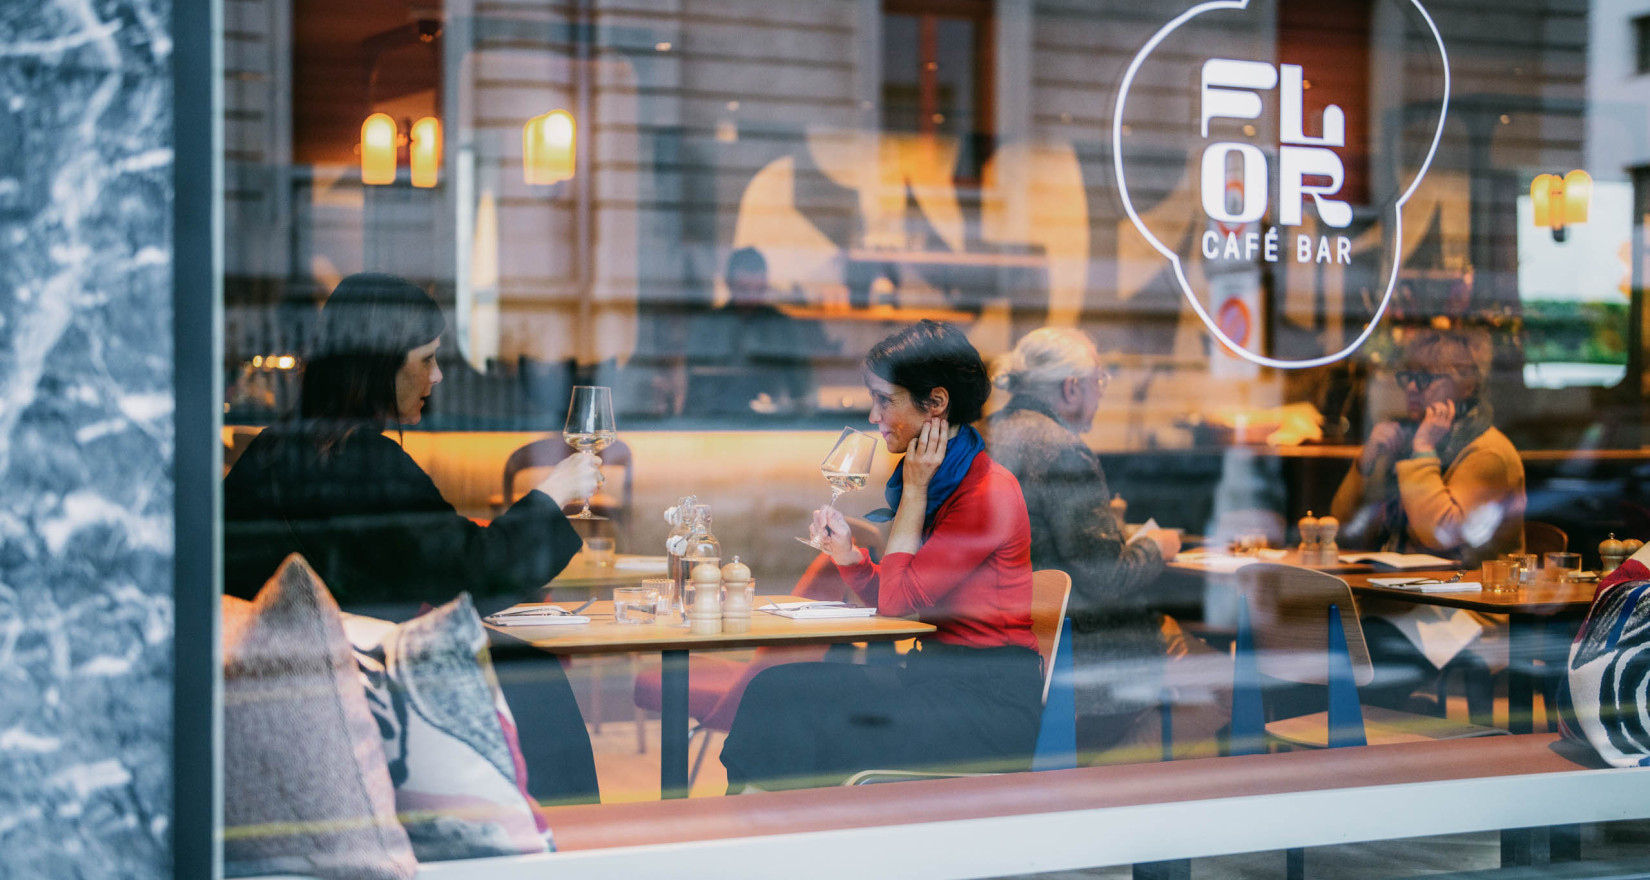 Glasfront eines Restaurants mit Logo, durch das Glas sind die Gäste im Restaurant zu sehen